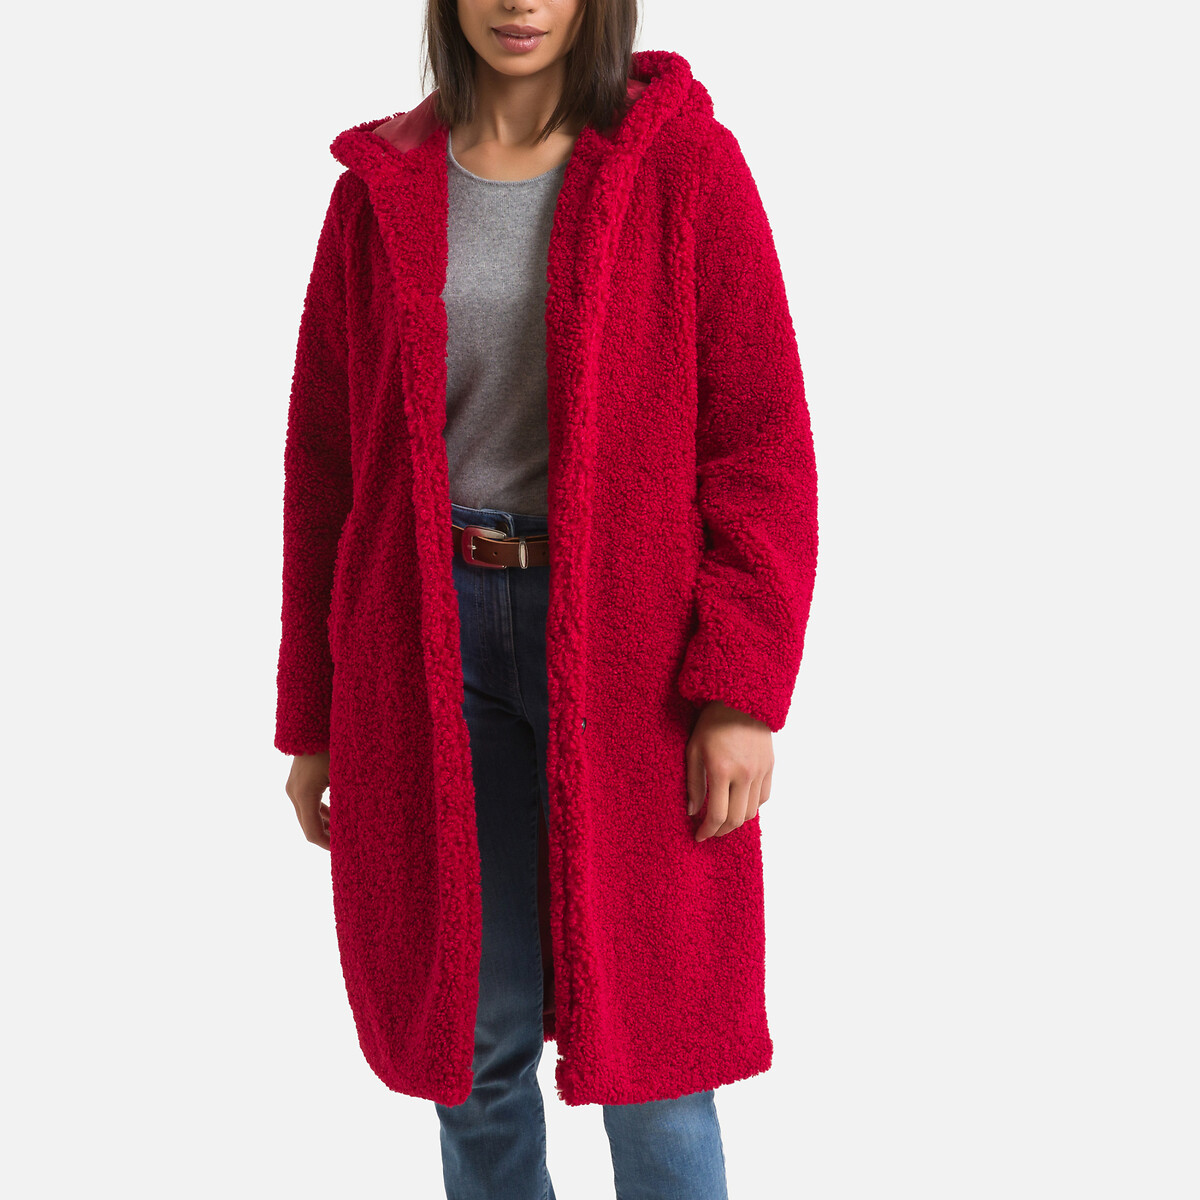 Пальто LaRedoute С капюшоном из малой пряжи 48 (FR) - 54 (RUS) красный, размер 48 (FR) - 54 (RUS)